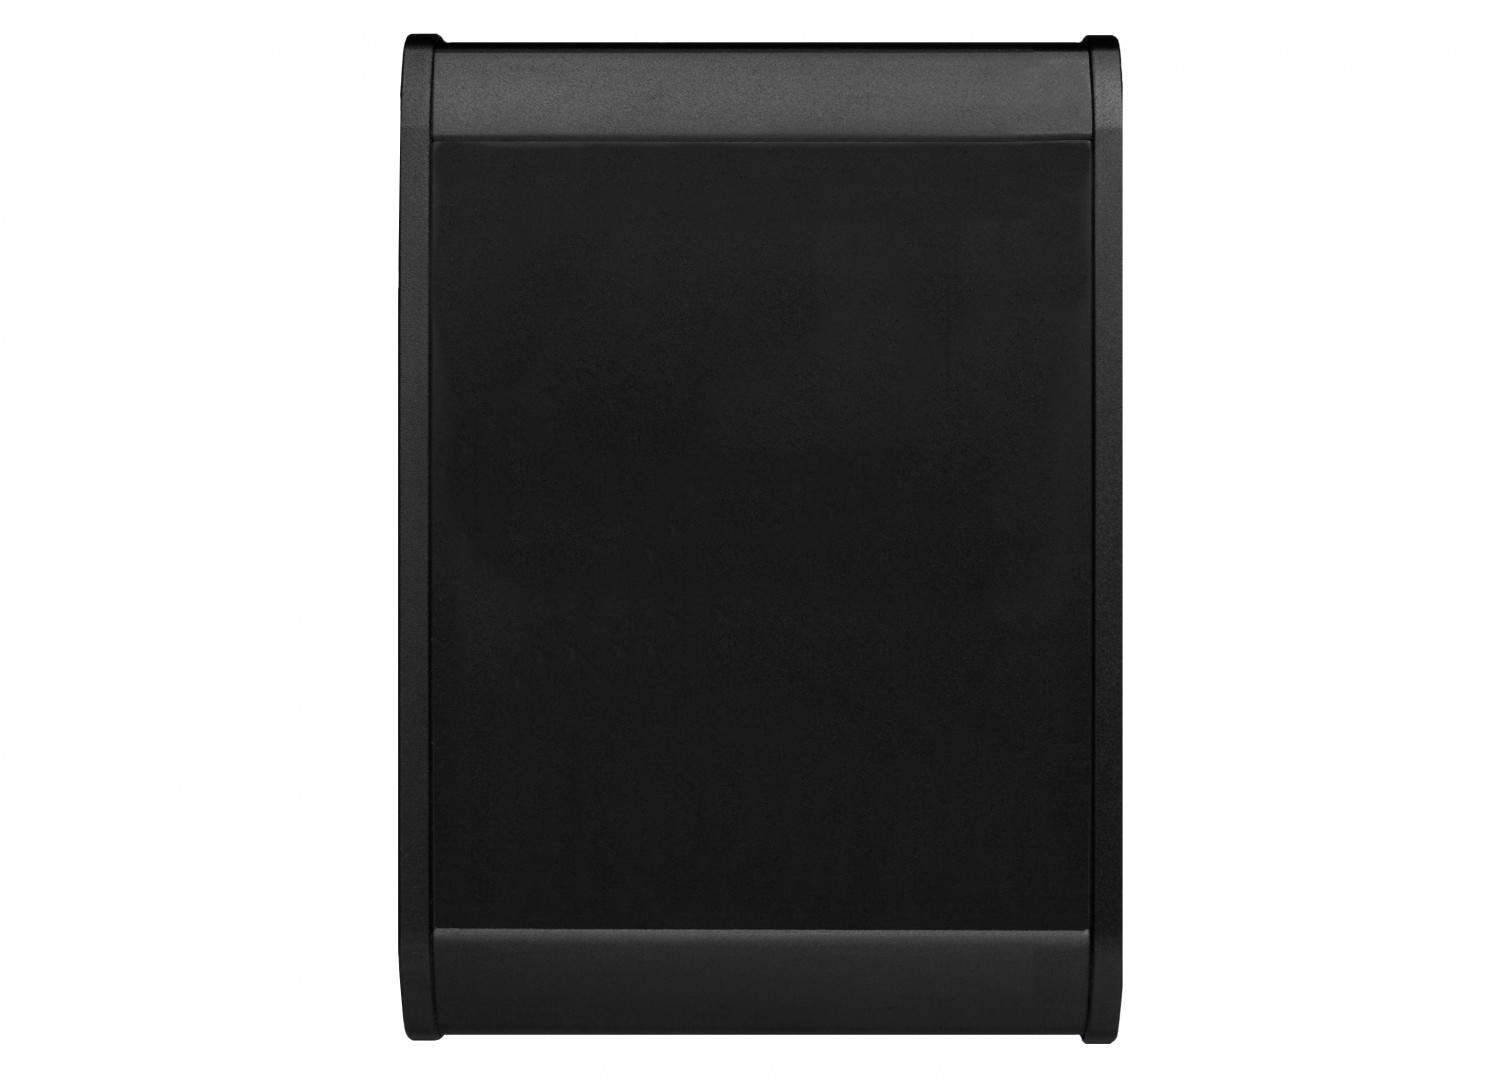 Skaarhoj Blank module for Mega Panel - Black